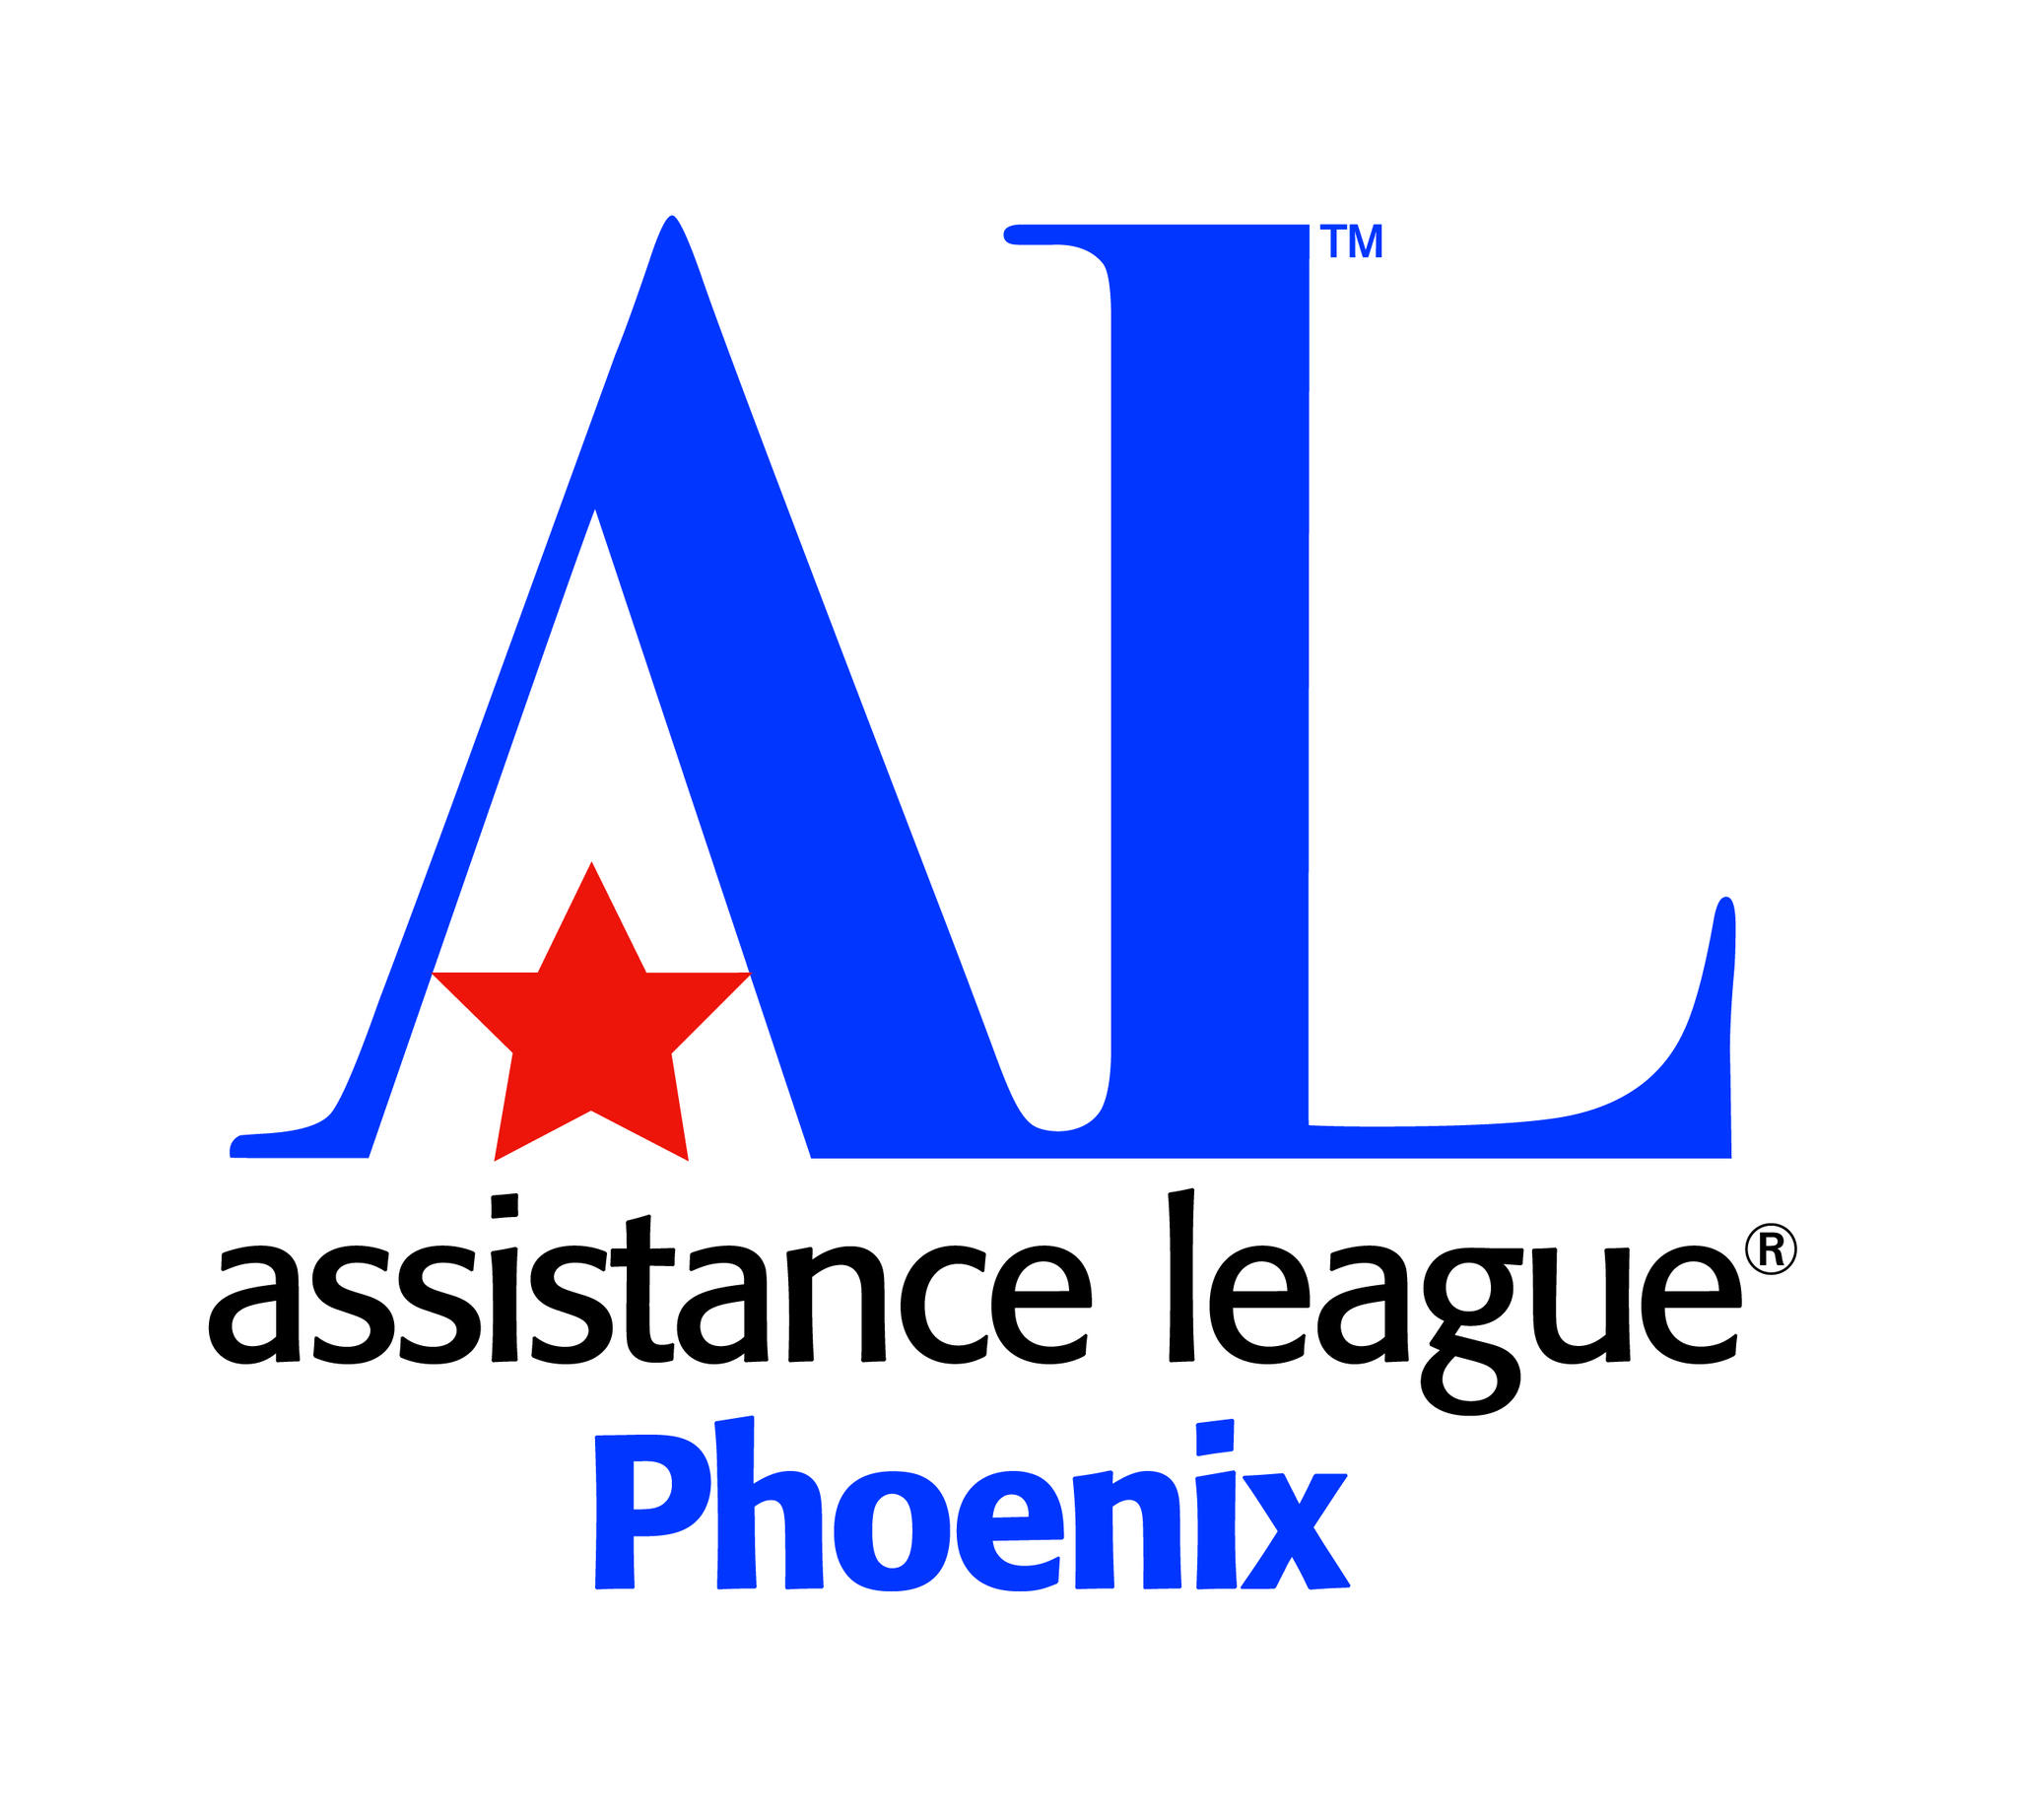 Thrift Boutique - Assistance League of Phoenix